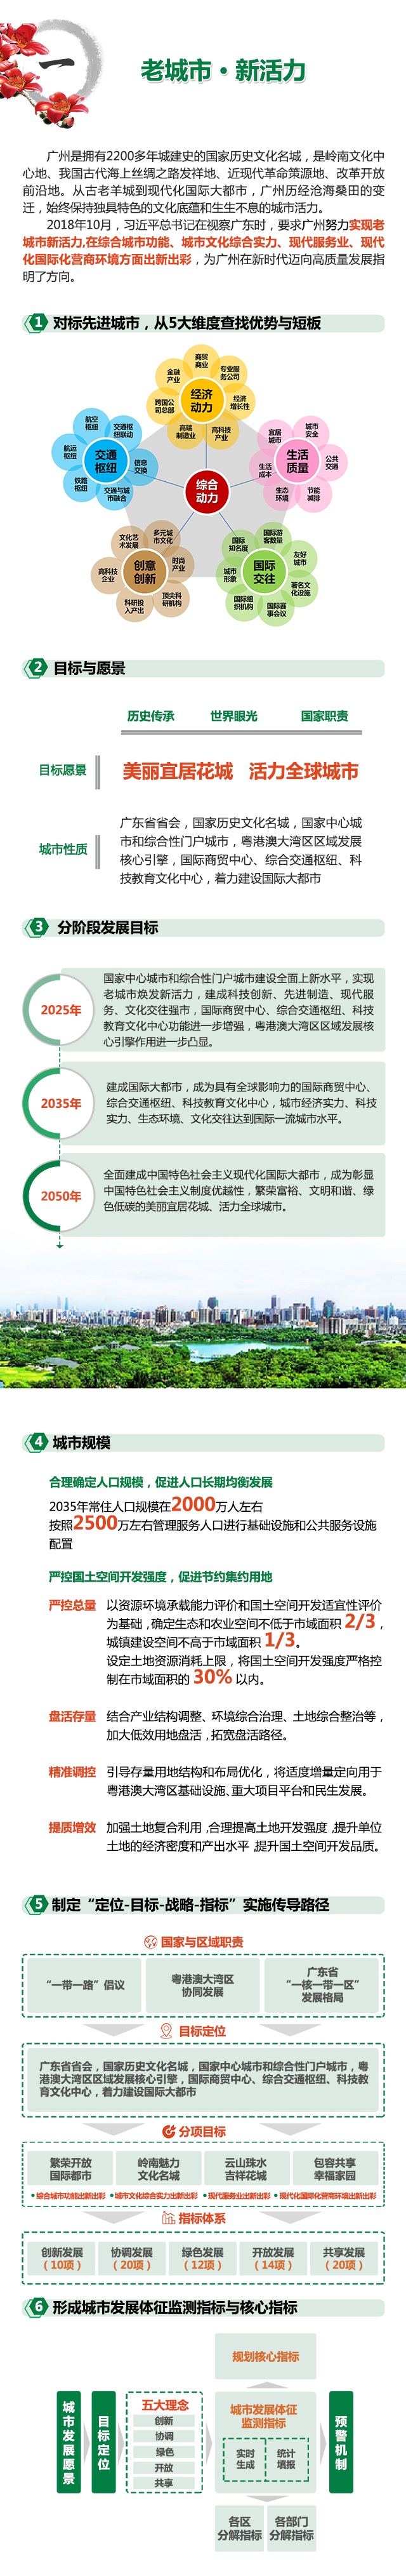 广州市国土空间总体规划